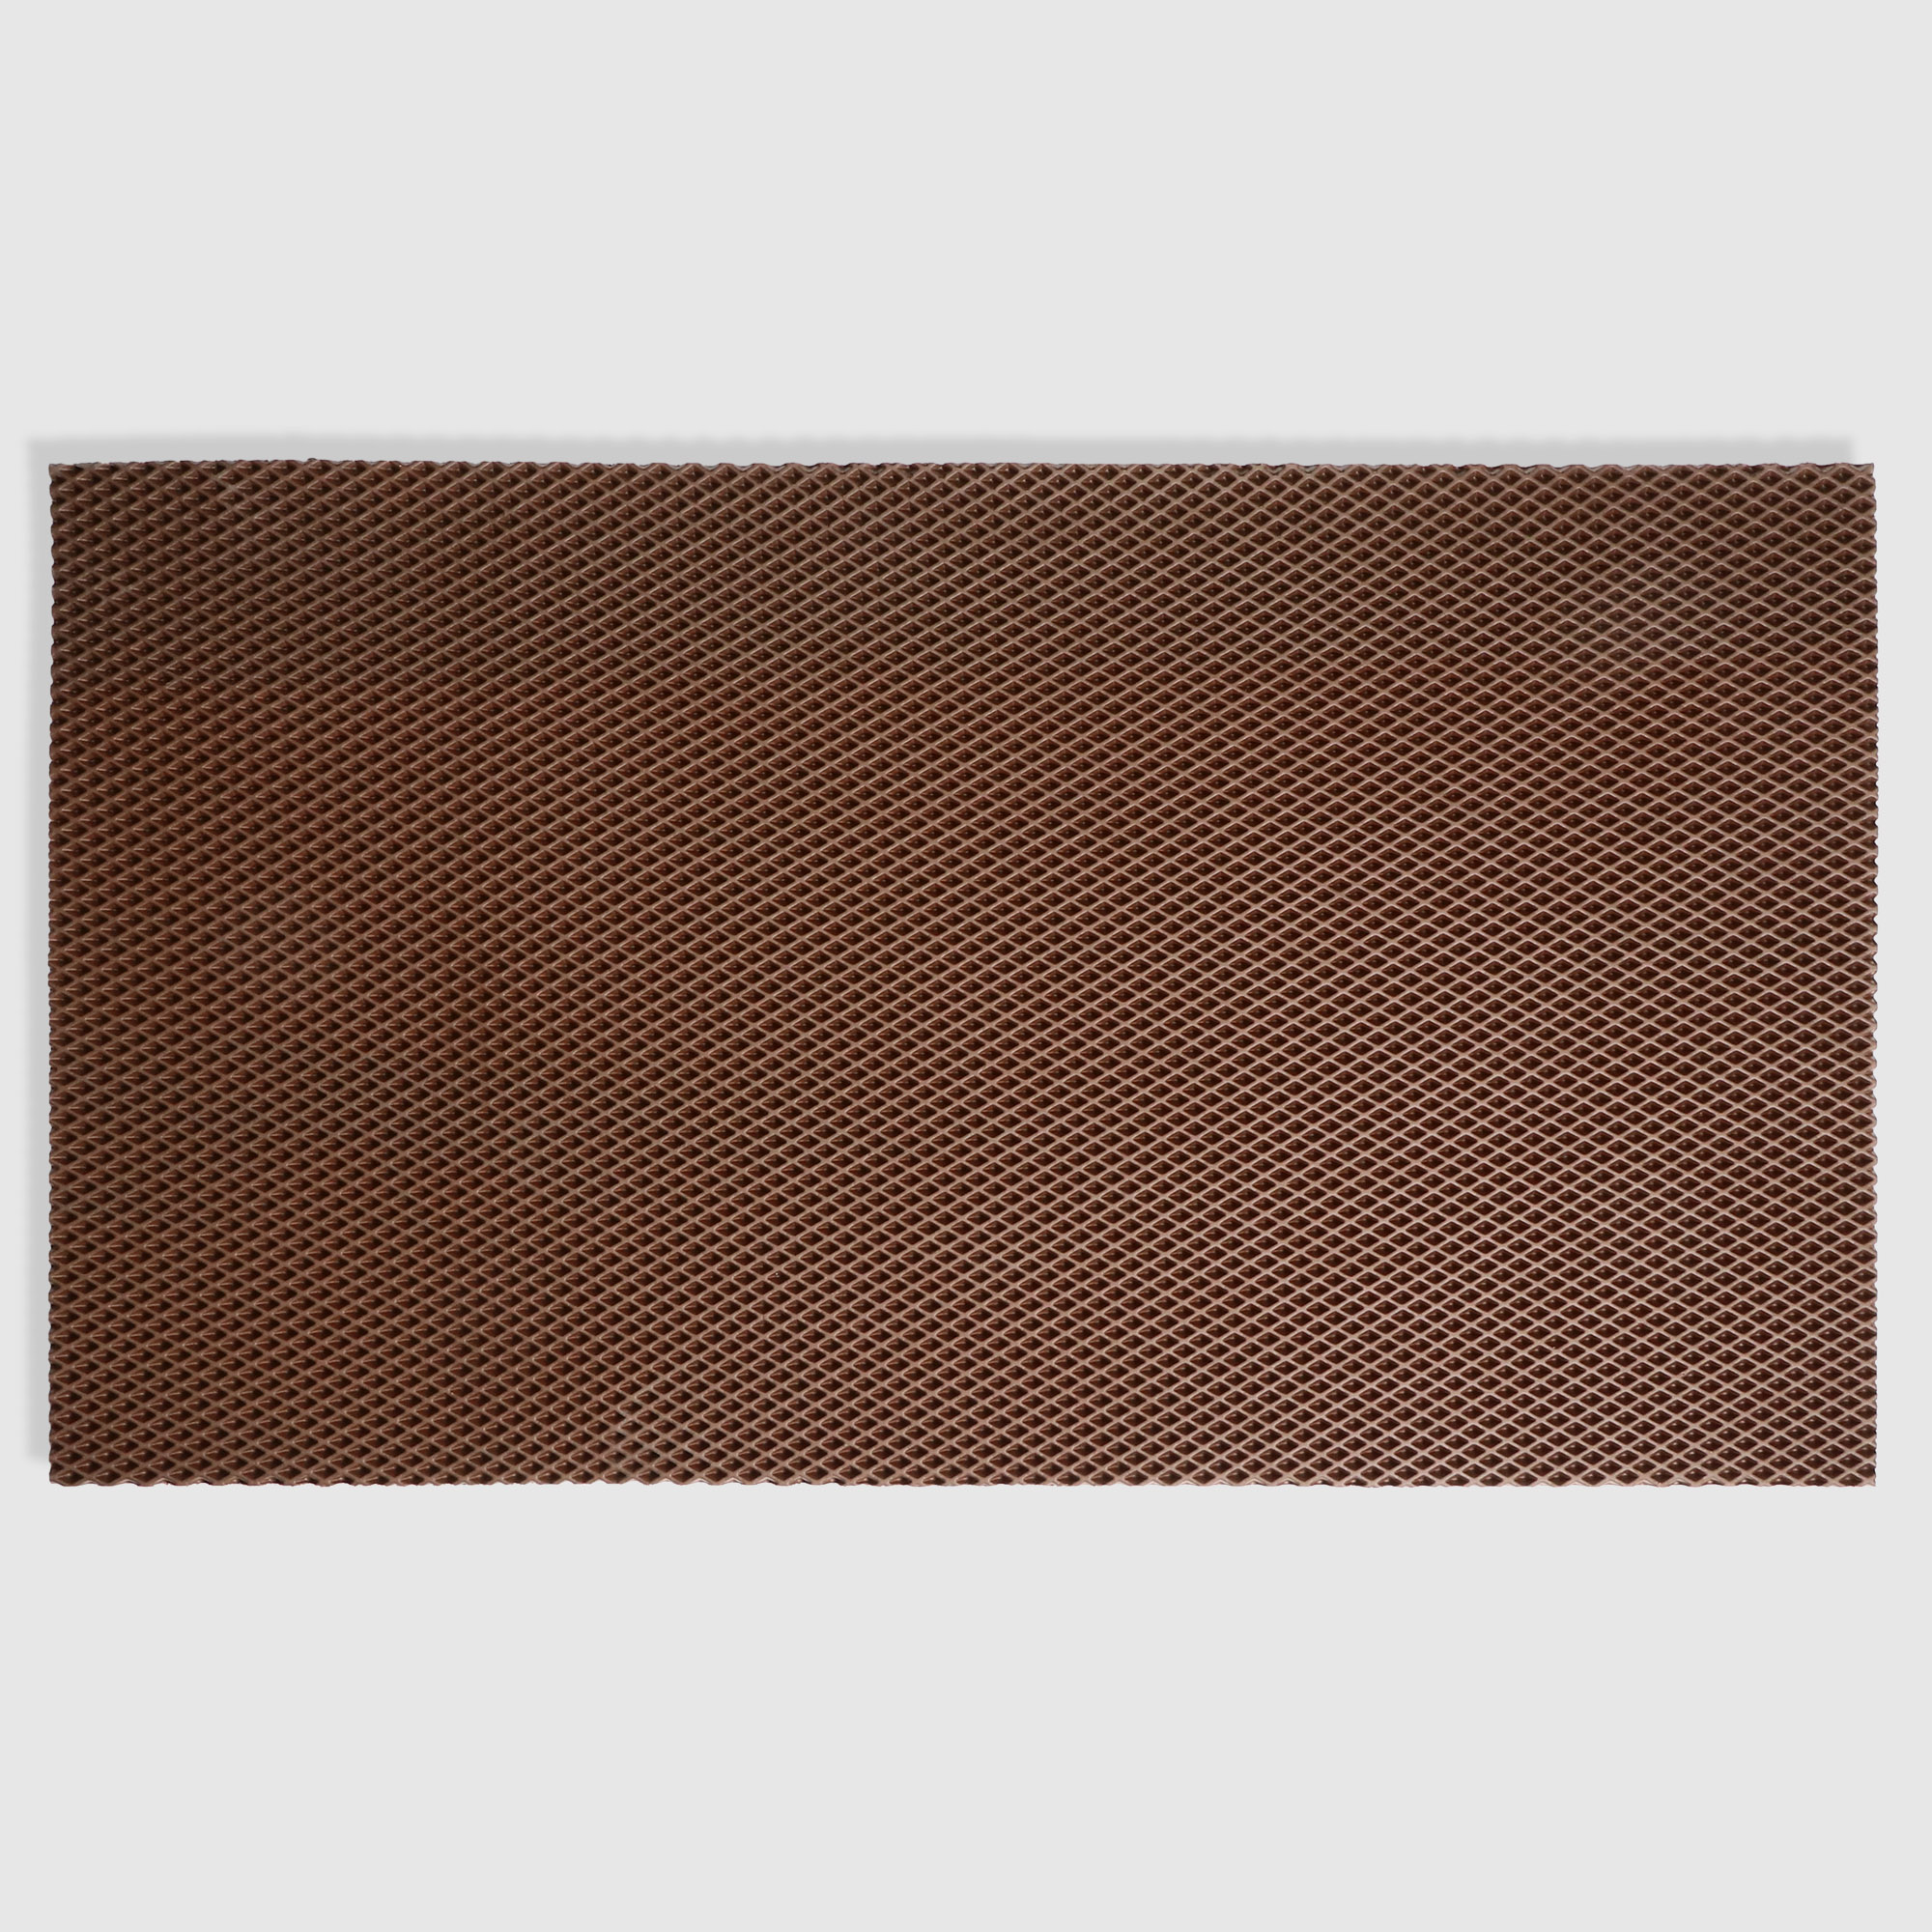 Коврик универсальный Homester коричневый, 68x120x1 см